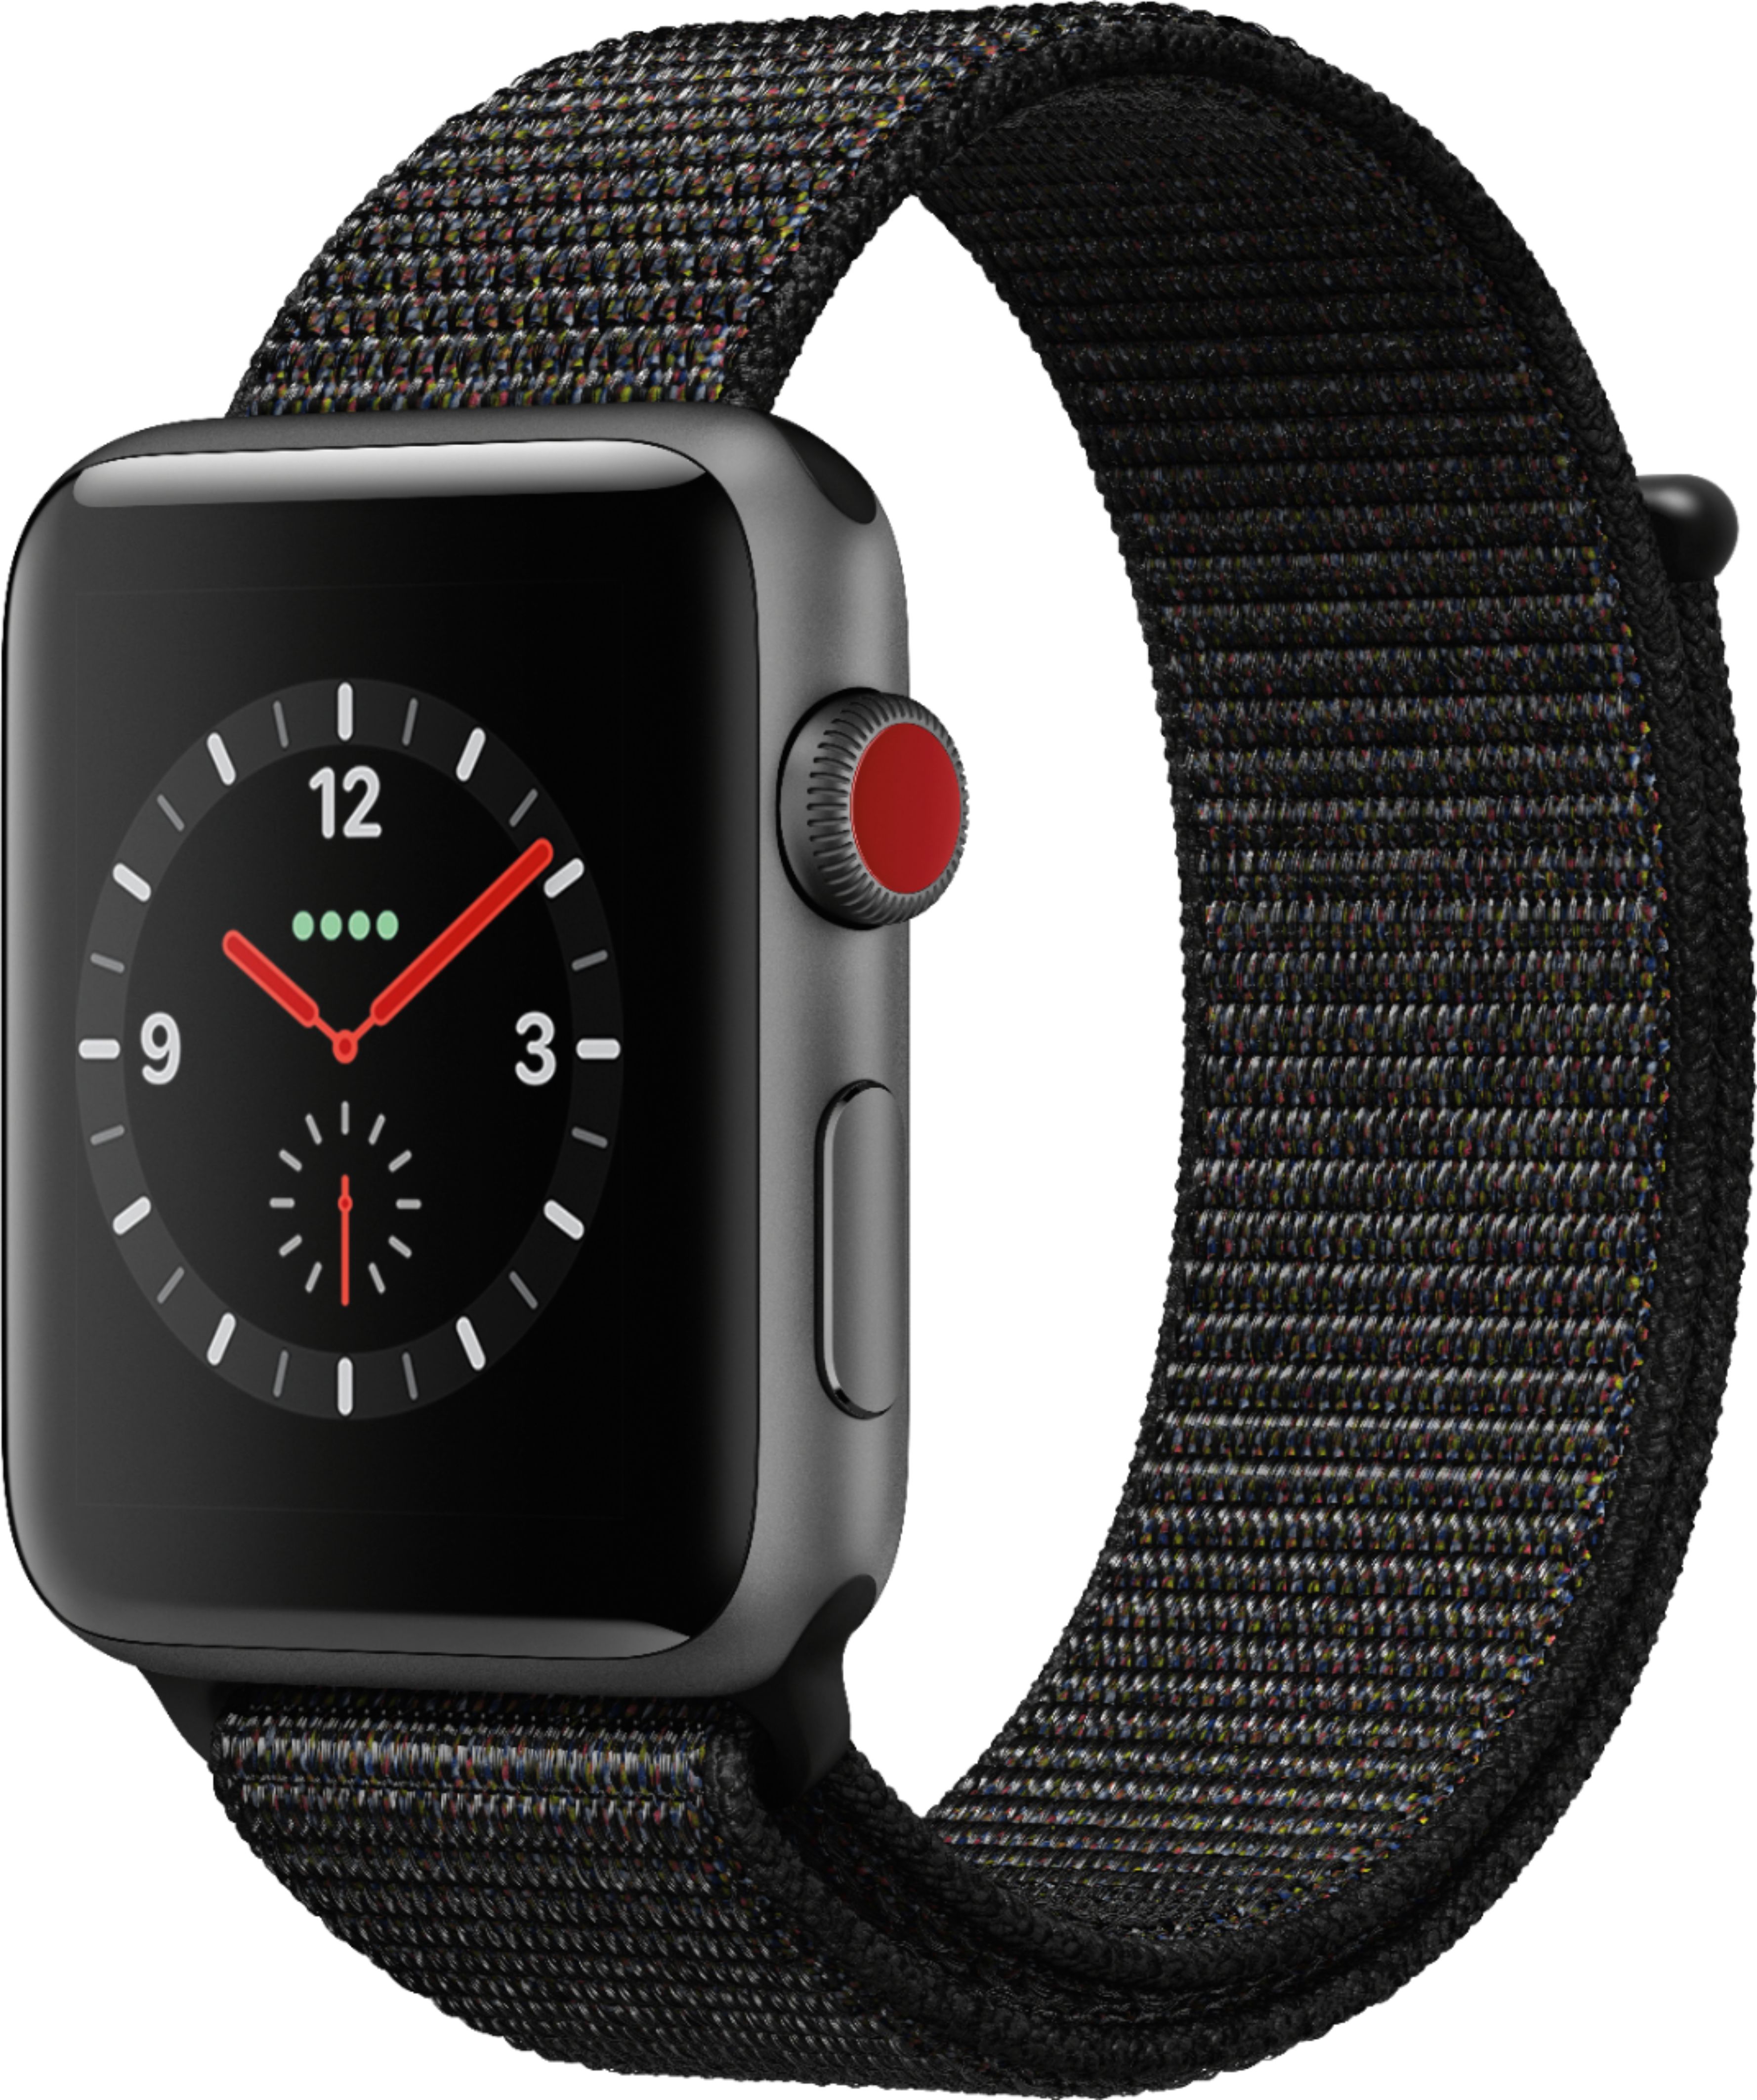 スマートフォン/携帯電話 その他 Apple Watch Series 3 (GPS + Cellular) 42mm Space Gray  - Best Buy